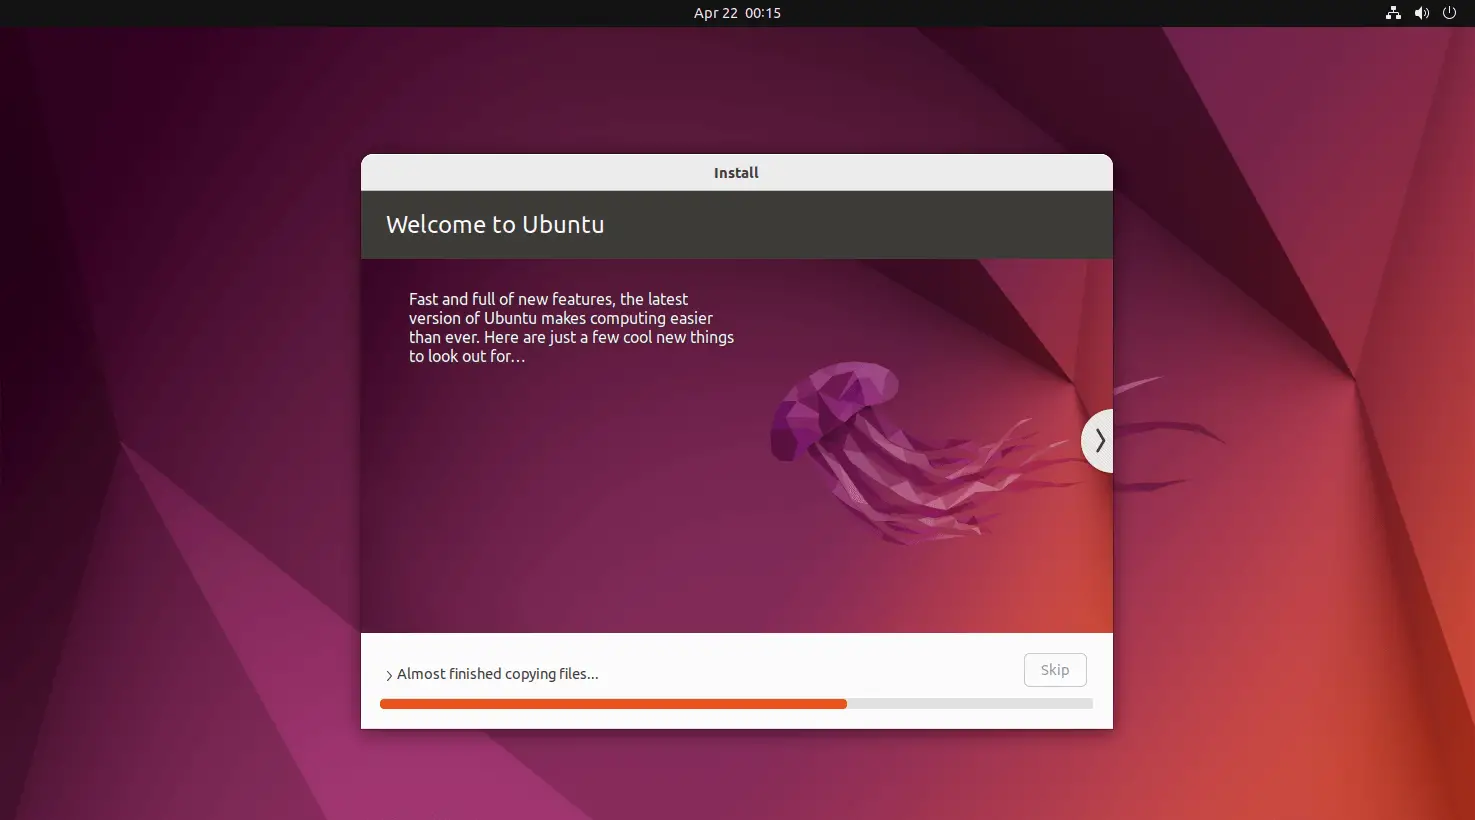 Ubuntu 22.04 Installation in Progress